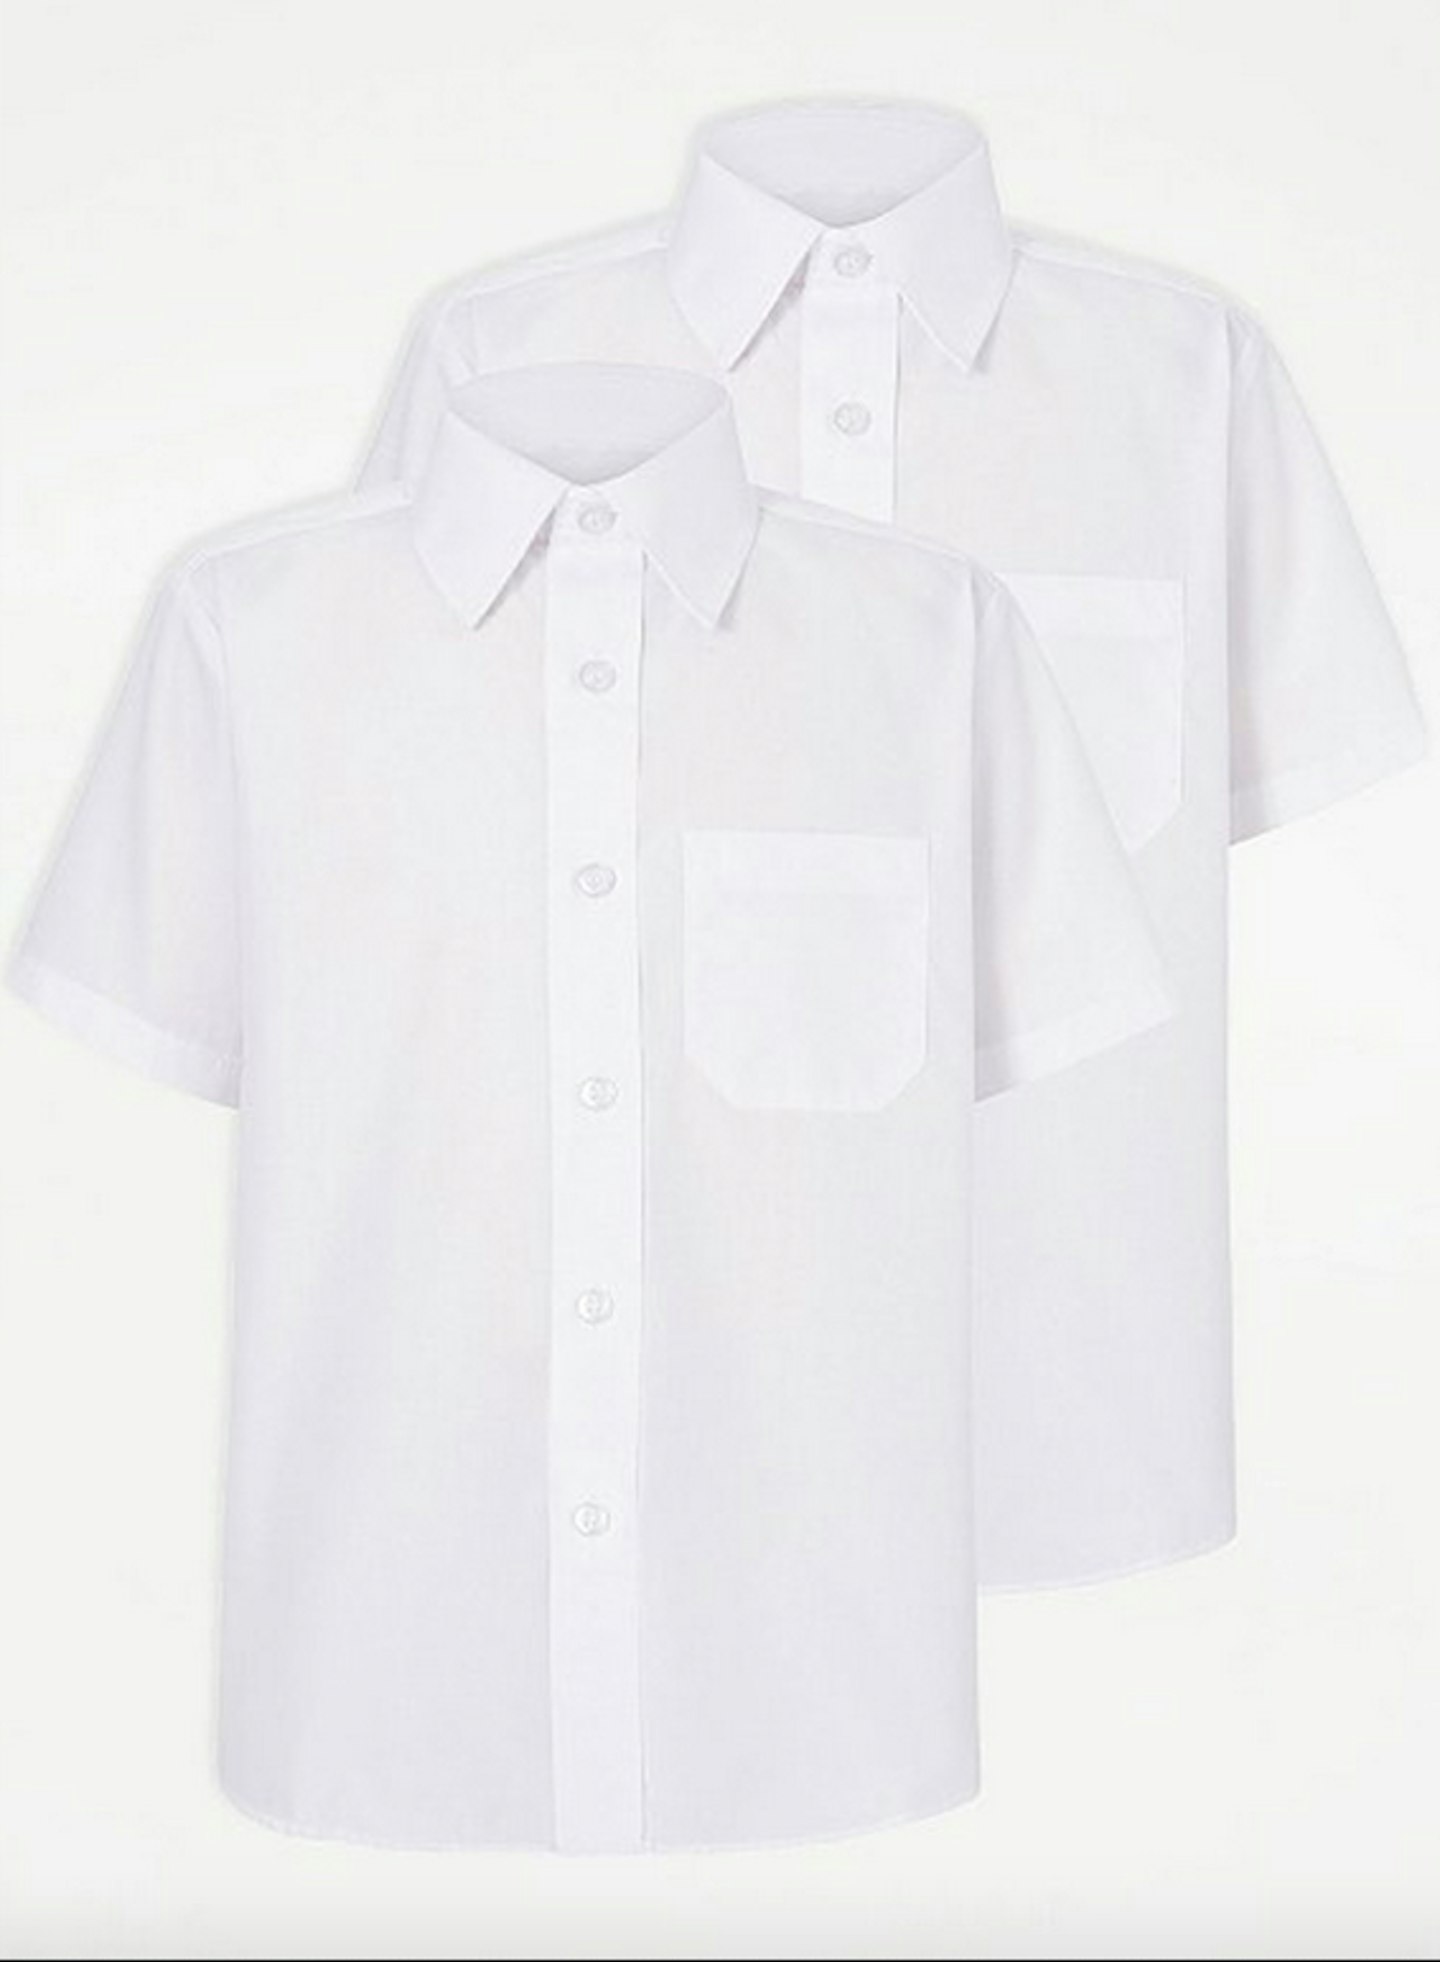 White Short Sleeve School Shirt 2 Pack, £3